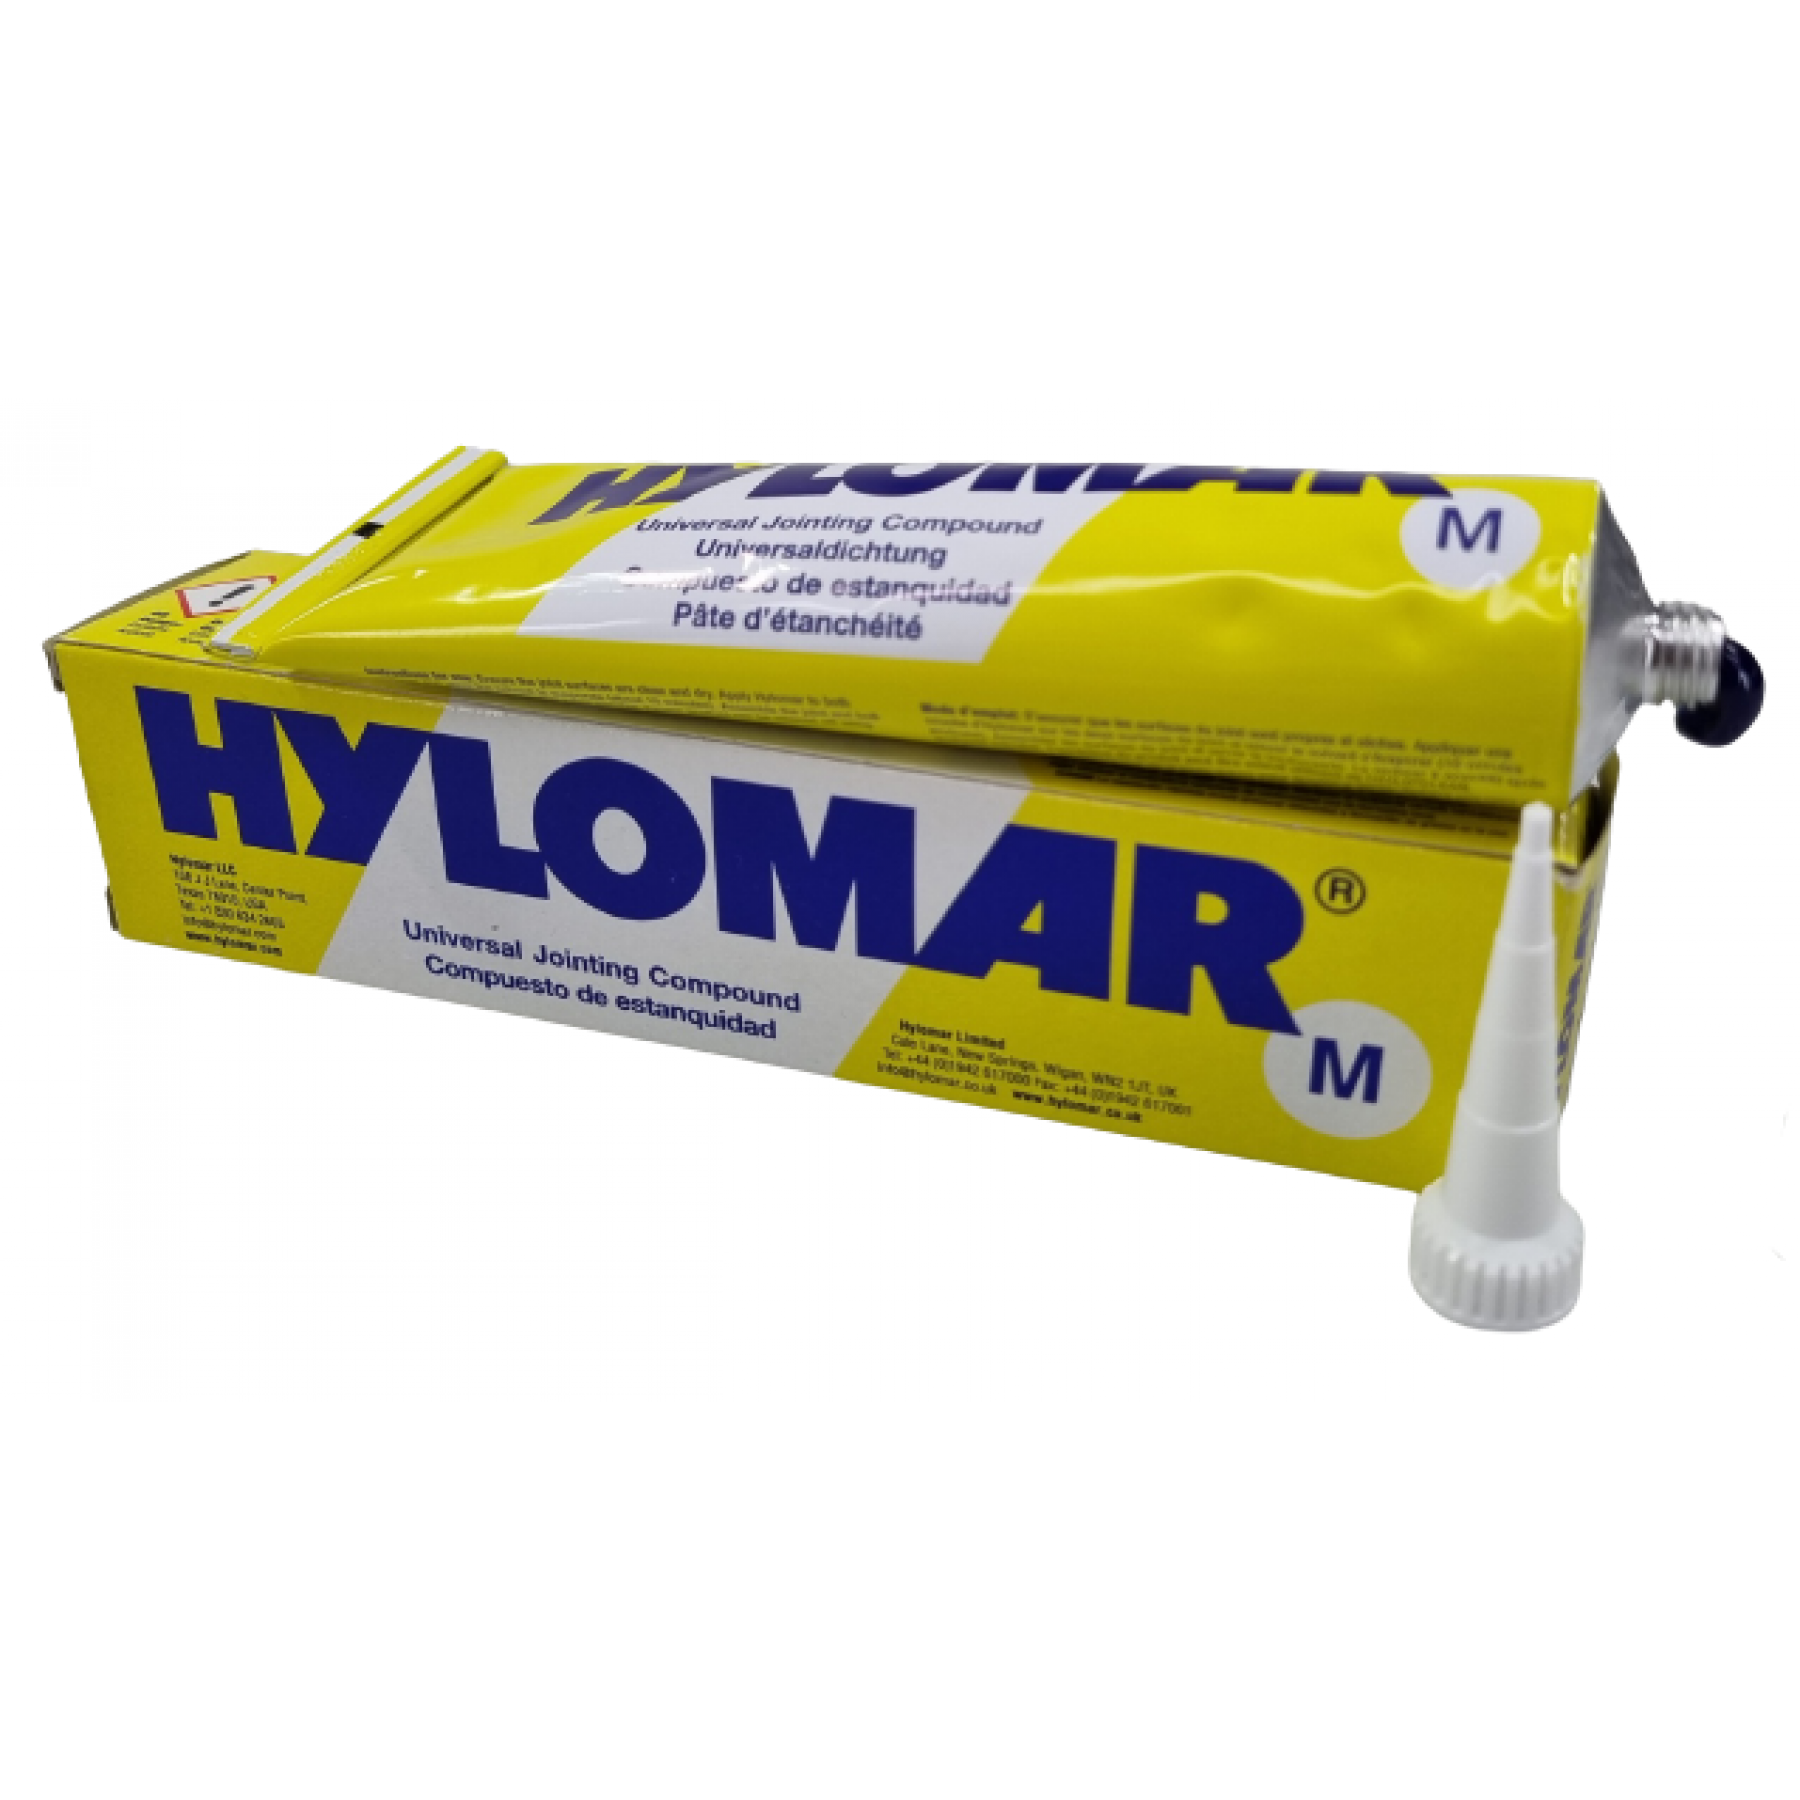 Vloeibare pakking Hylomar 80 ml.